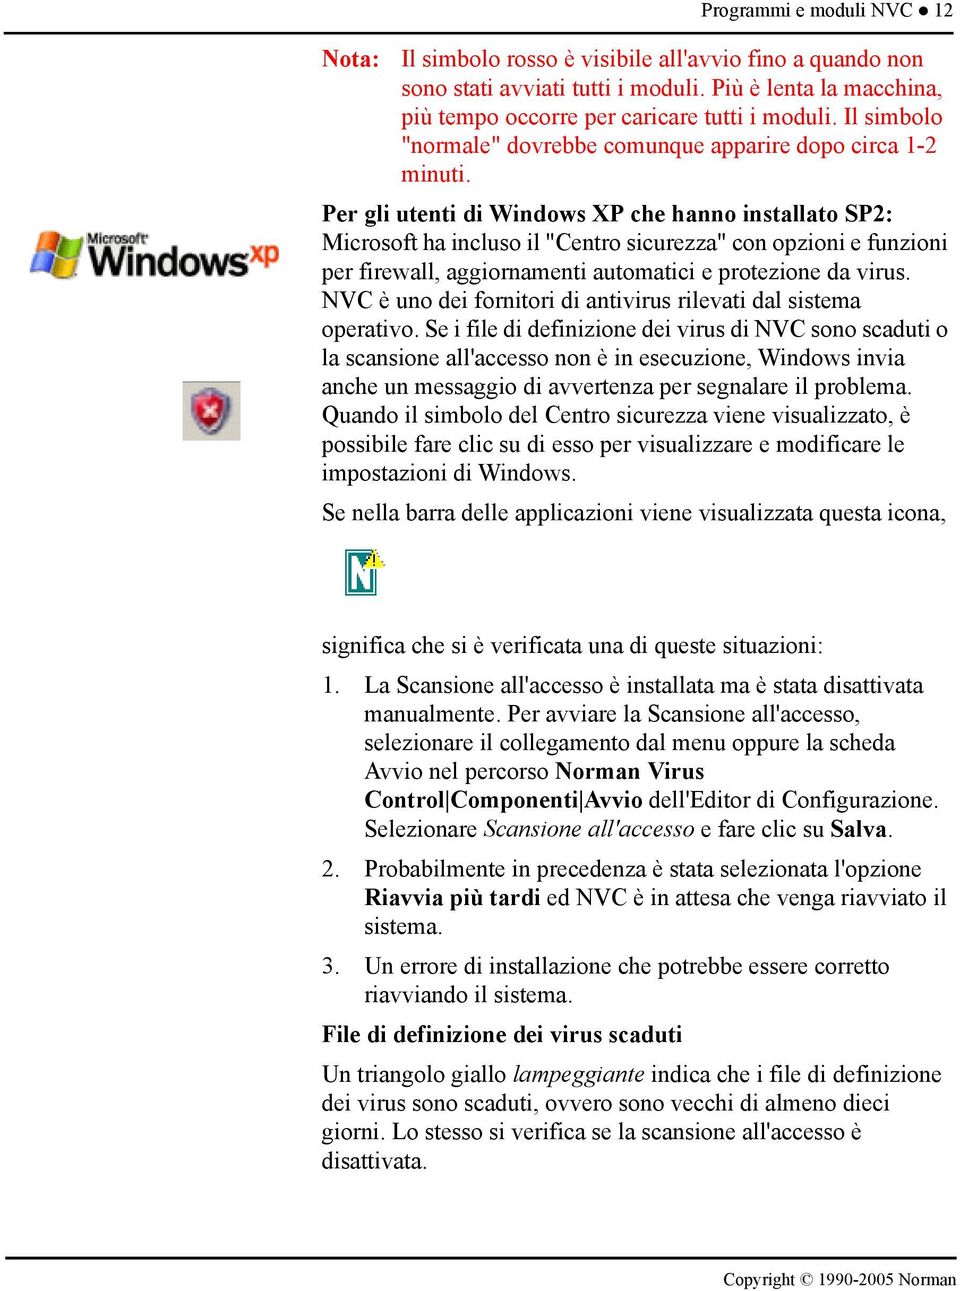 Per gli utenti di Windows XP che hanno installato SP2: Microsoft ha incluso il "Centro sicurezza" con opzioni e funzioni per firewall, aggiornamenti automatici e protezione da virus.